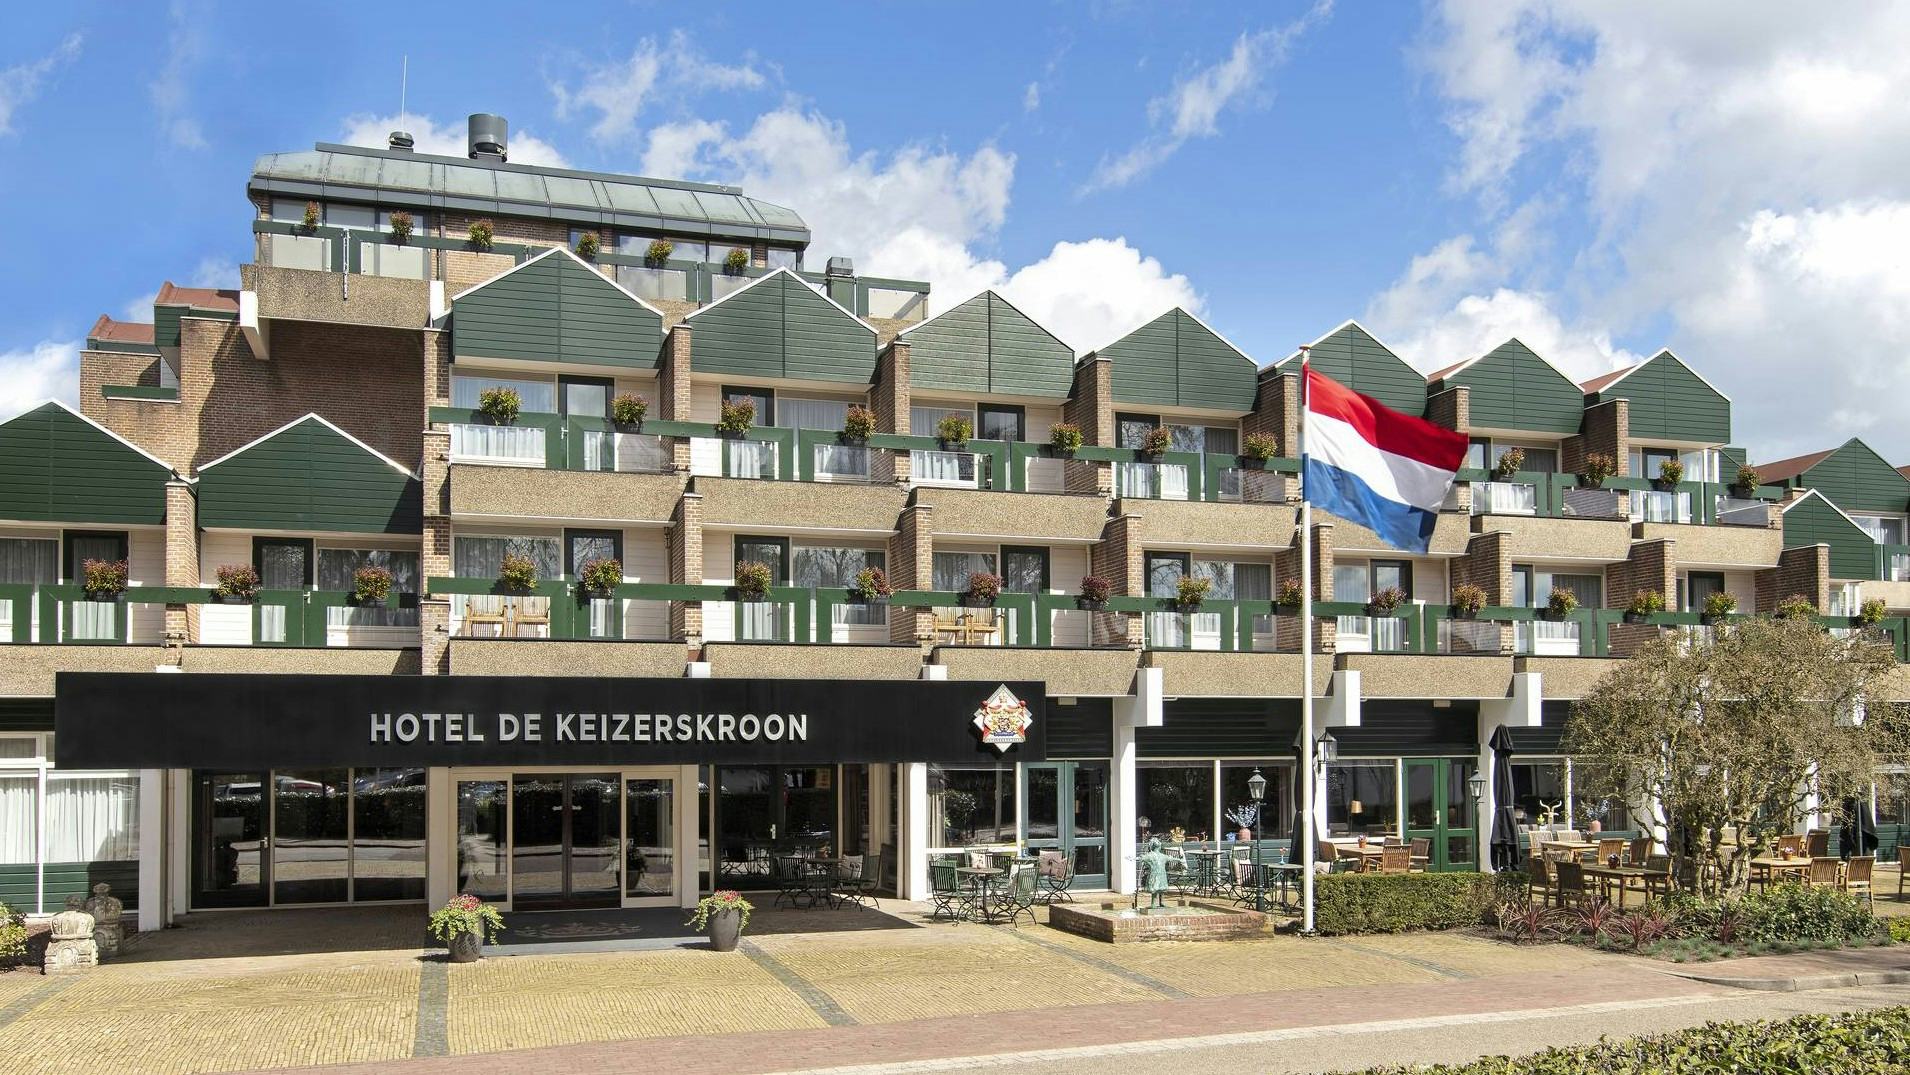 Hotel De Keizerskroon na vier maanden verbouwing weer open